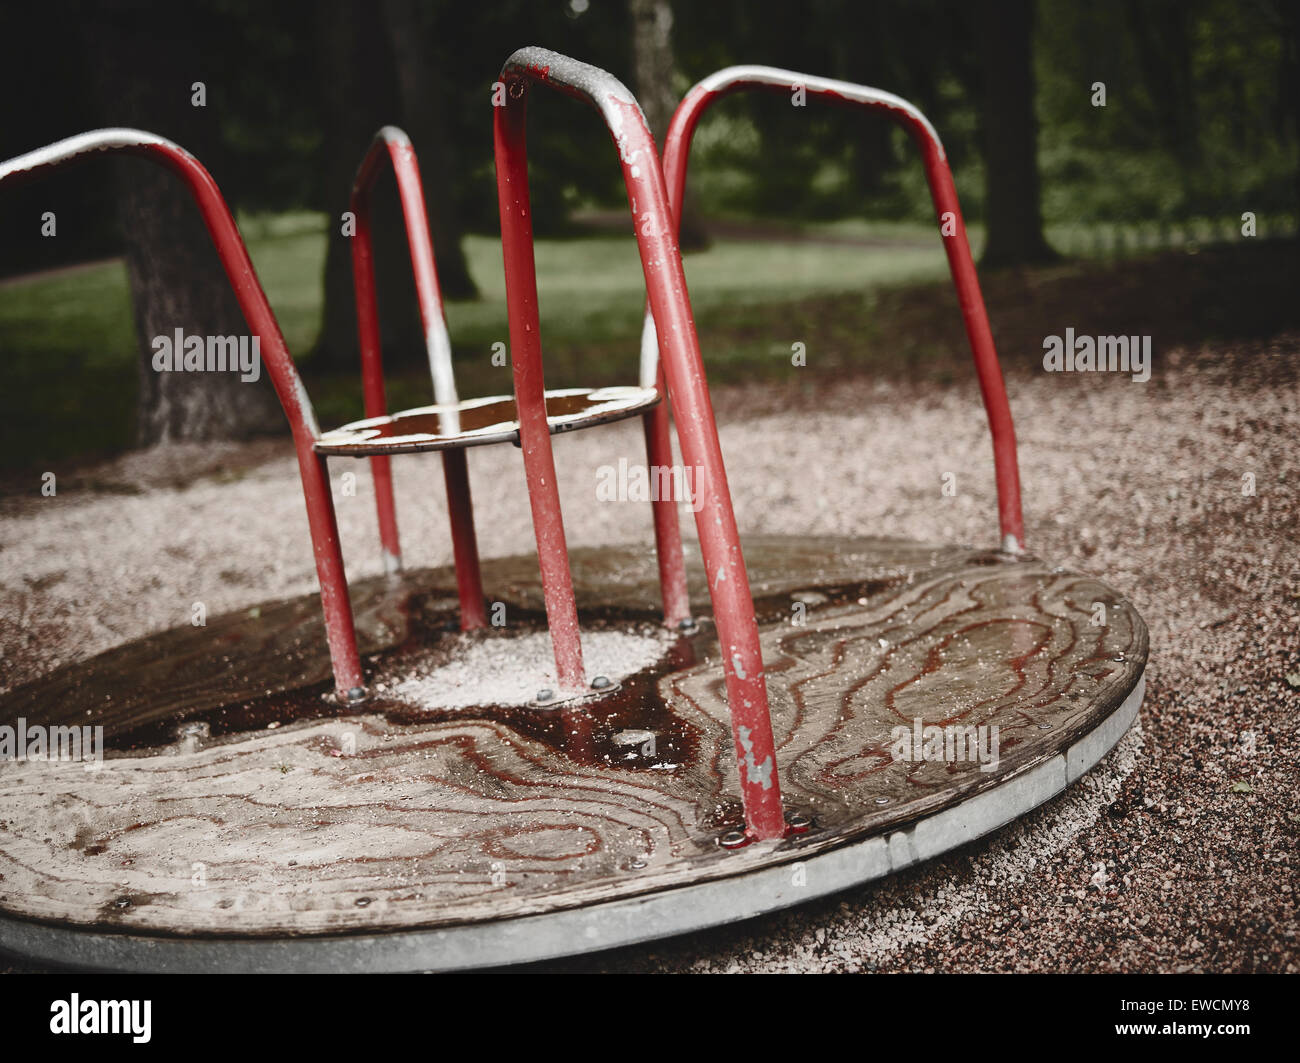 Svuotare i bambini la rotonda nel parco giochi, sinistre sentire, croce immagine elaborata Foto Stock